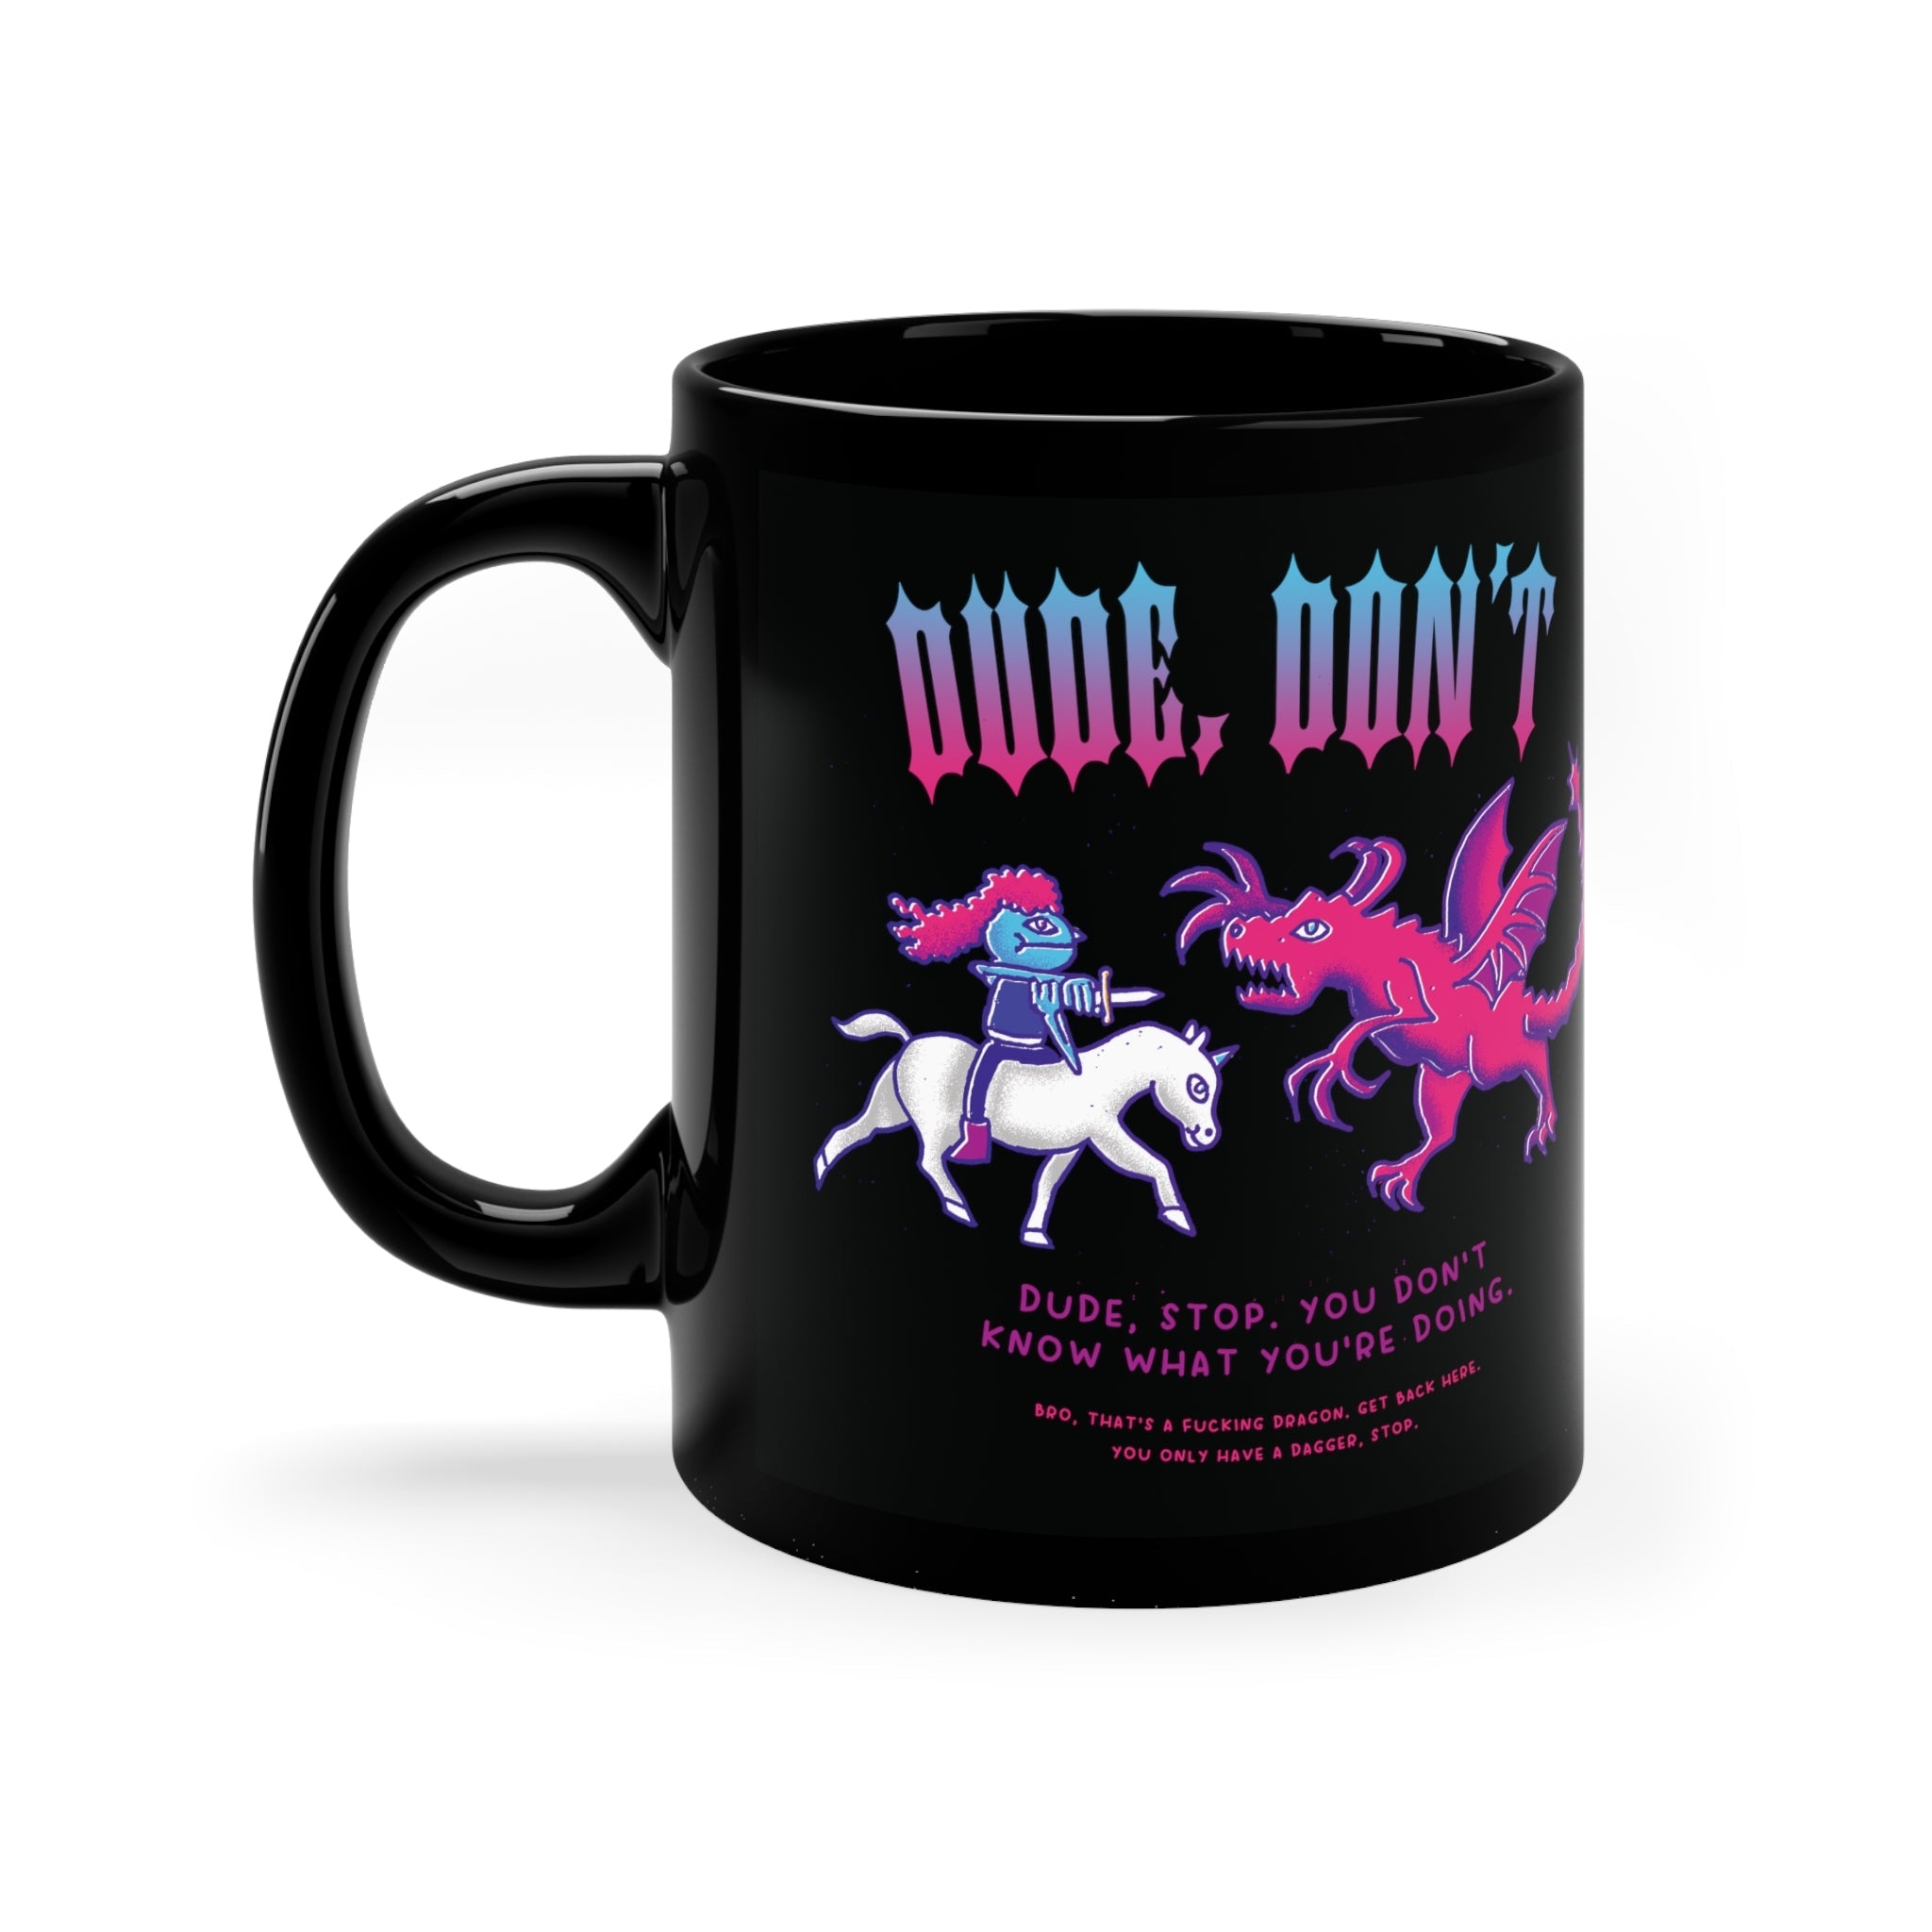 Dude, Don't | 11oz Black Mug - Mug - Ace of Gnomes - 10327400939159453500